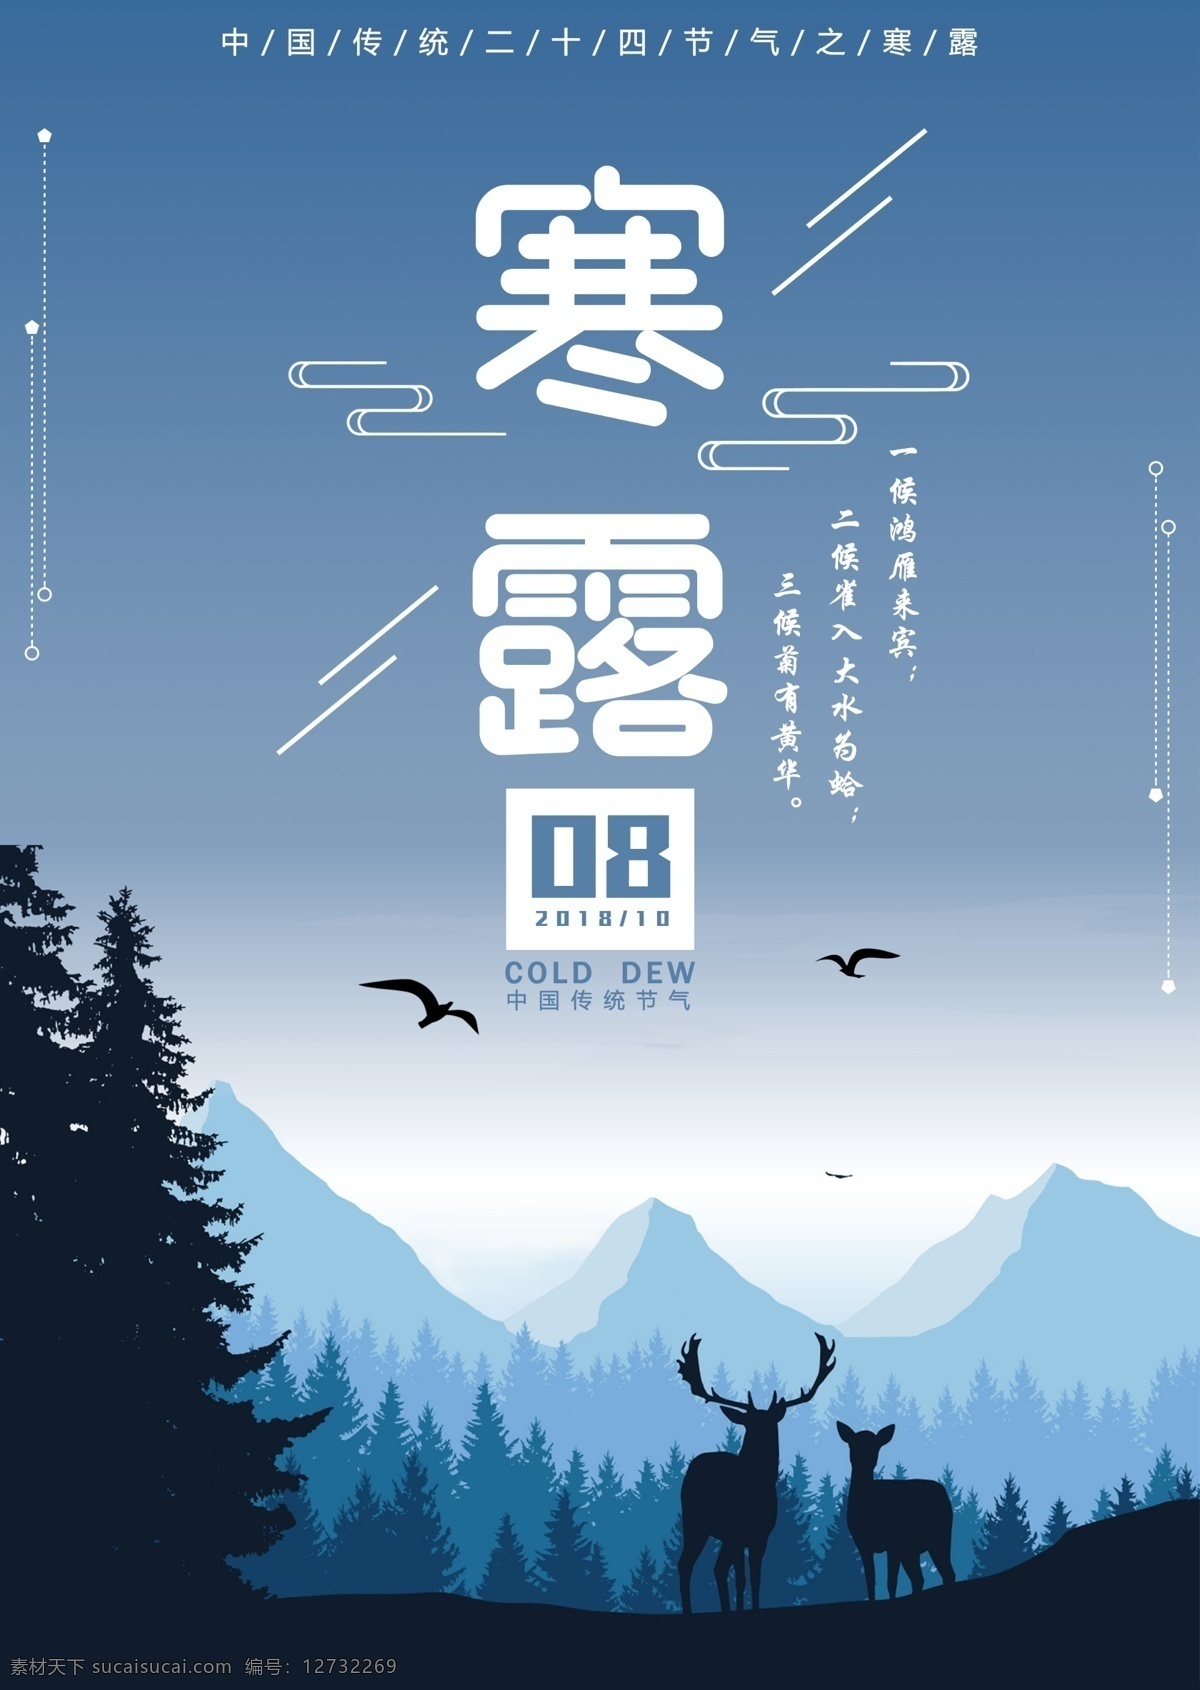 中国 传统 节气 寒露 节日 海报 插画 蓝色背景 插画背景 节日海报 传统节气